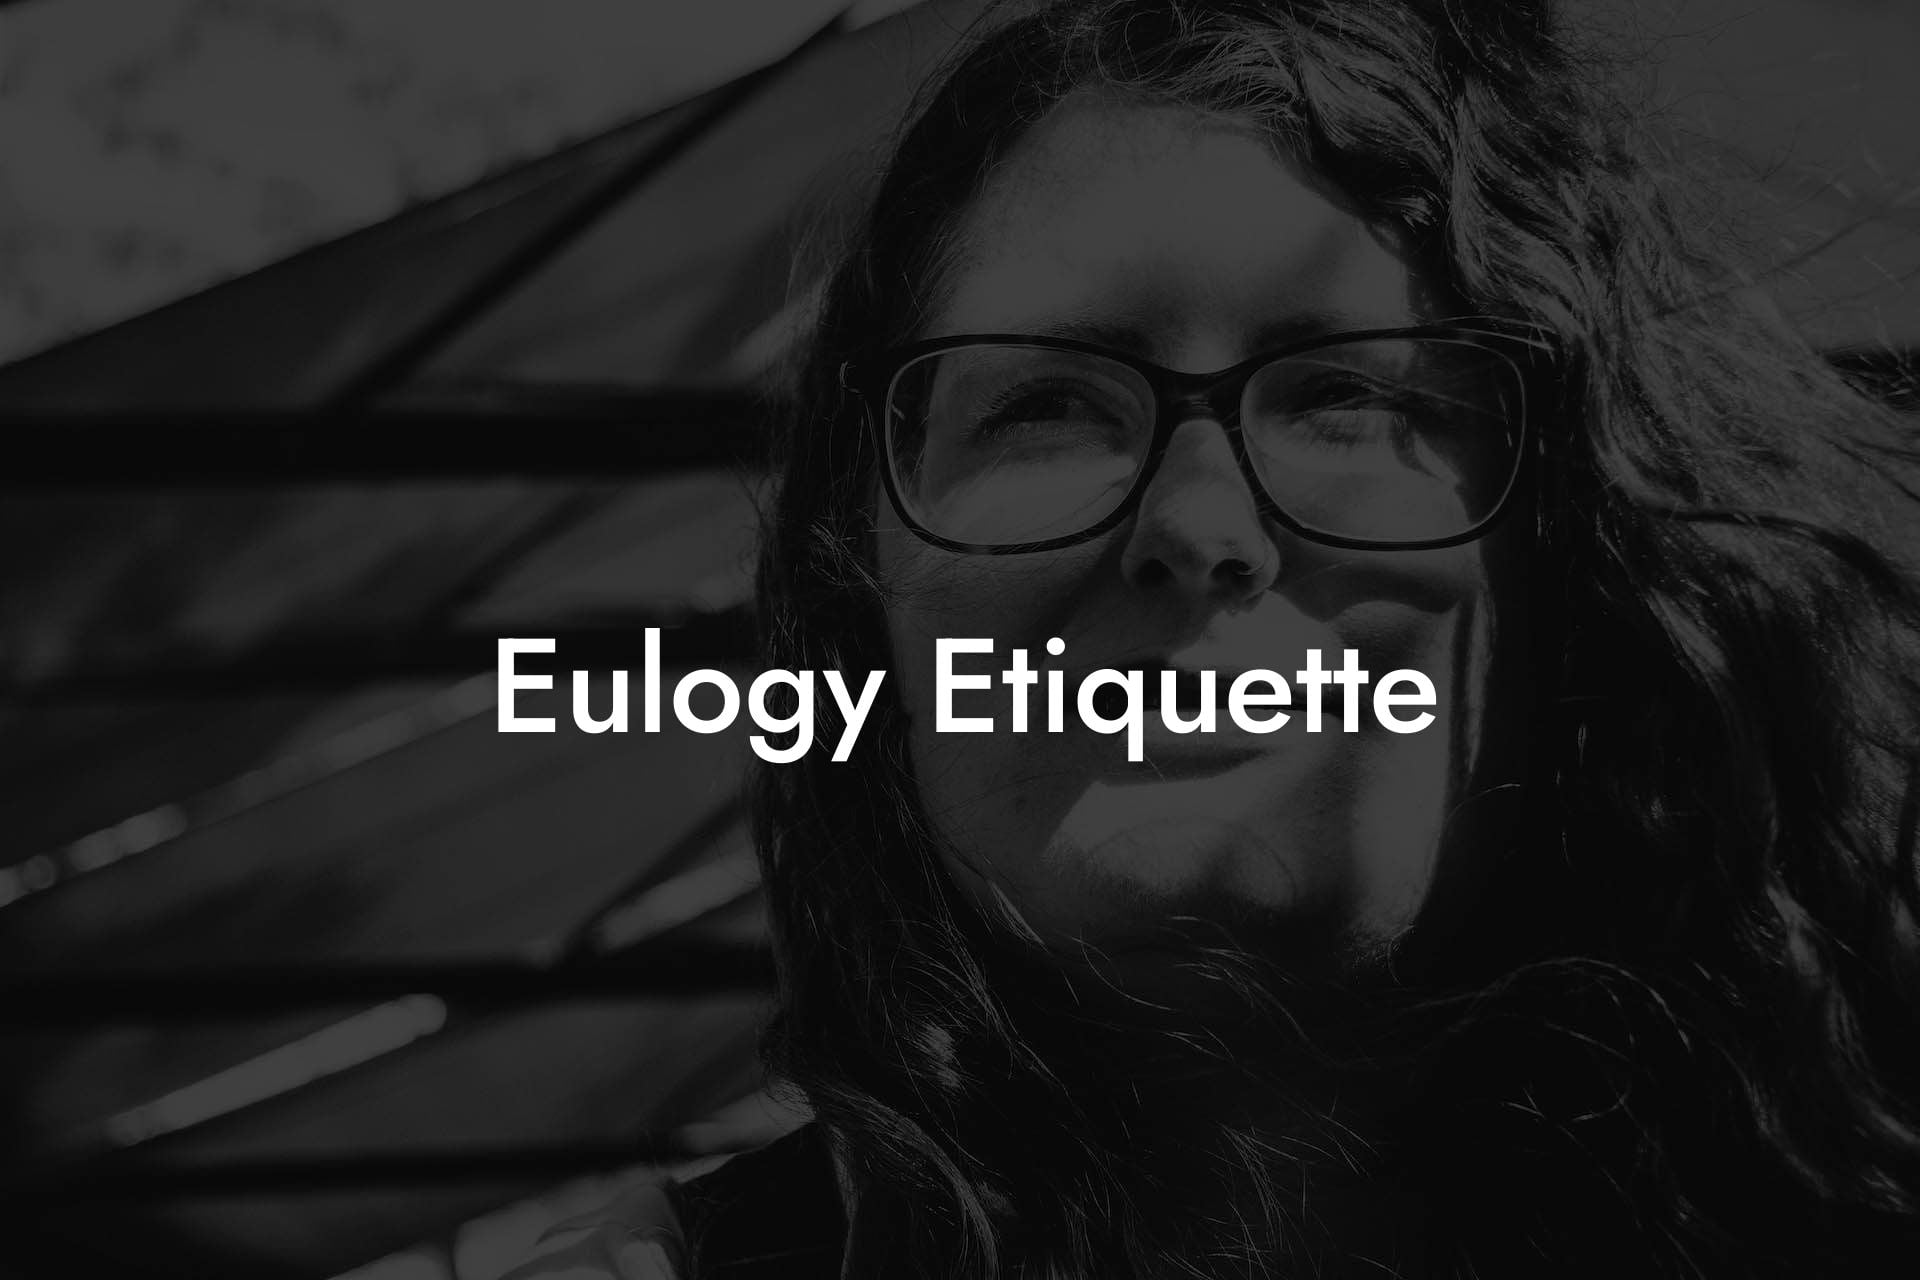 Eulogy Etiquette